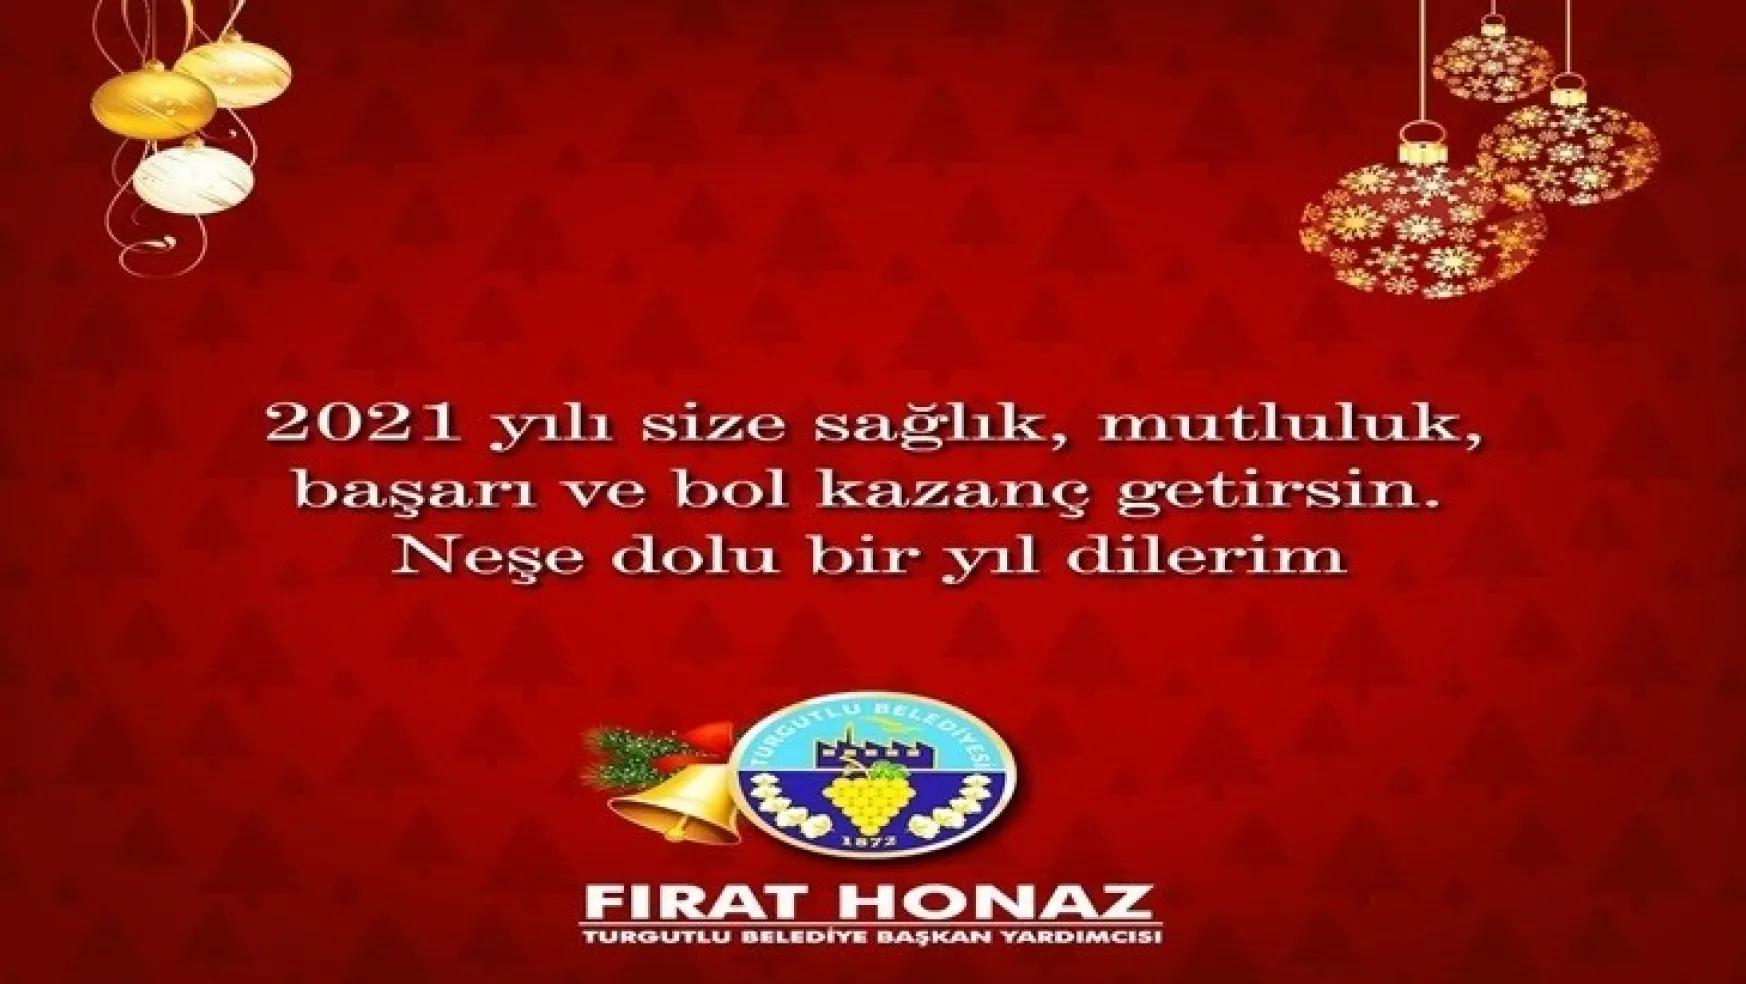 Turgutlu Belediye Başkan Yardımcısı Fırat Honaz'dan Yeni Yıl Mesajı